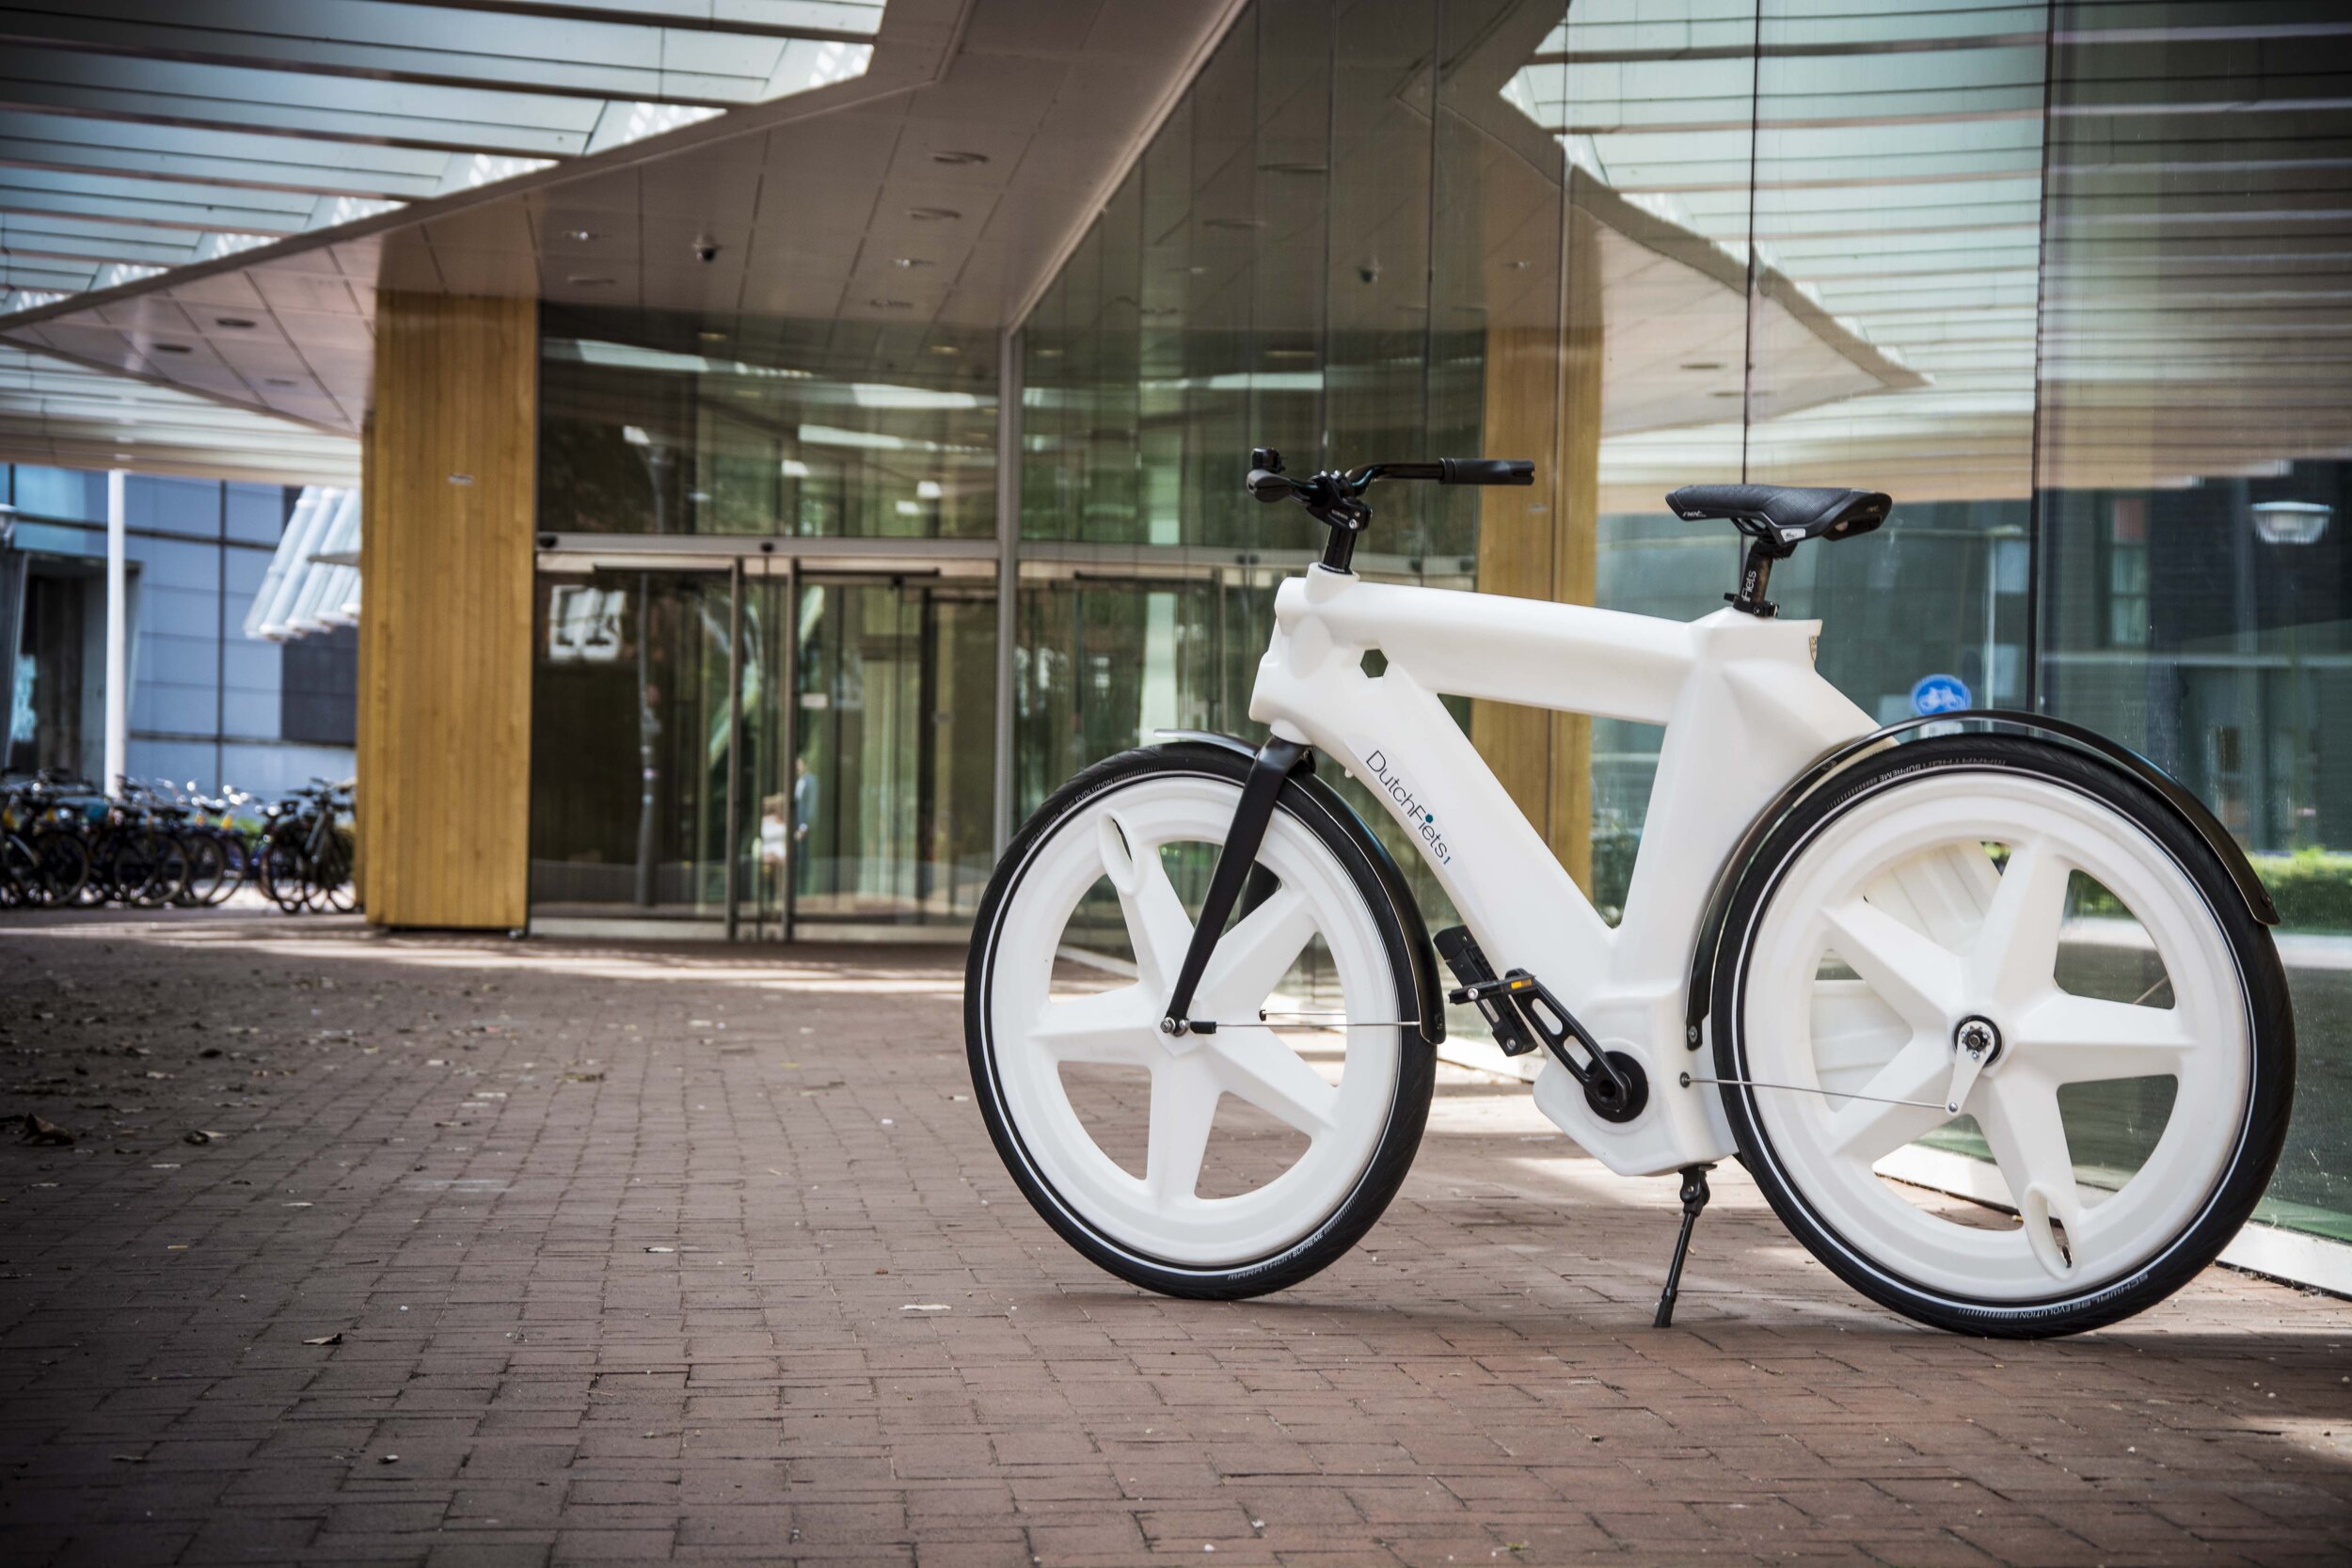 kleding Voorafgaan Charles Keasing DutchFiets recycled eerste fietsen - Duurzaam Ondernemen